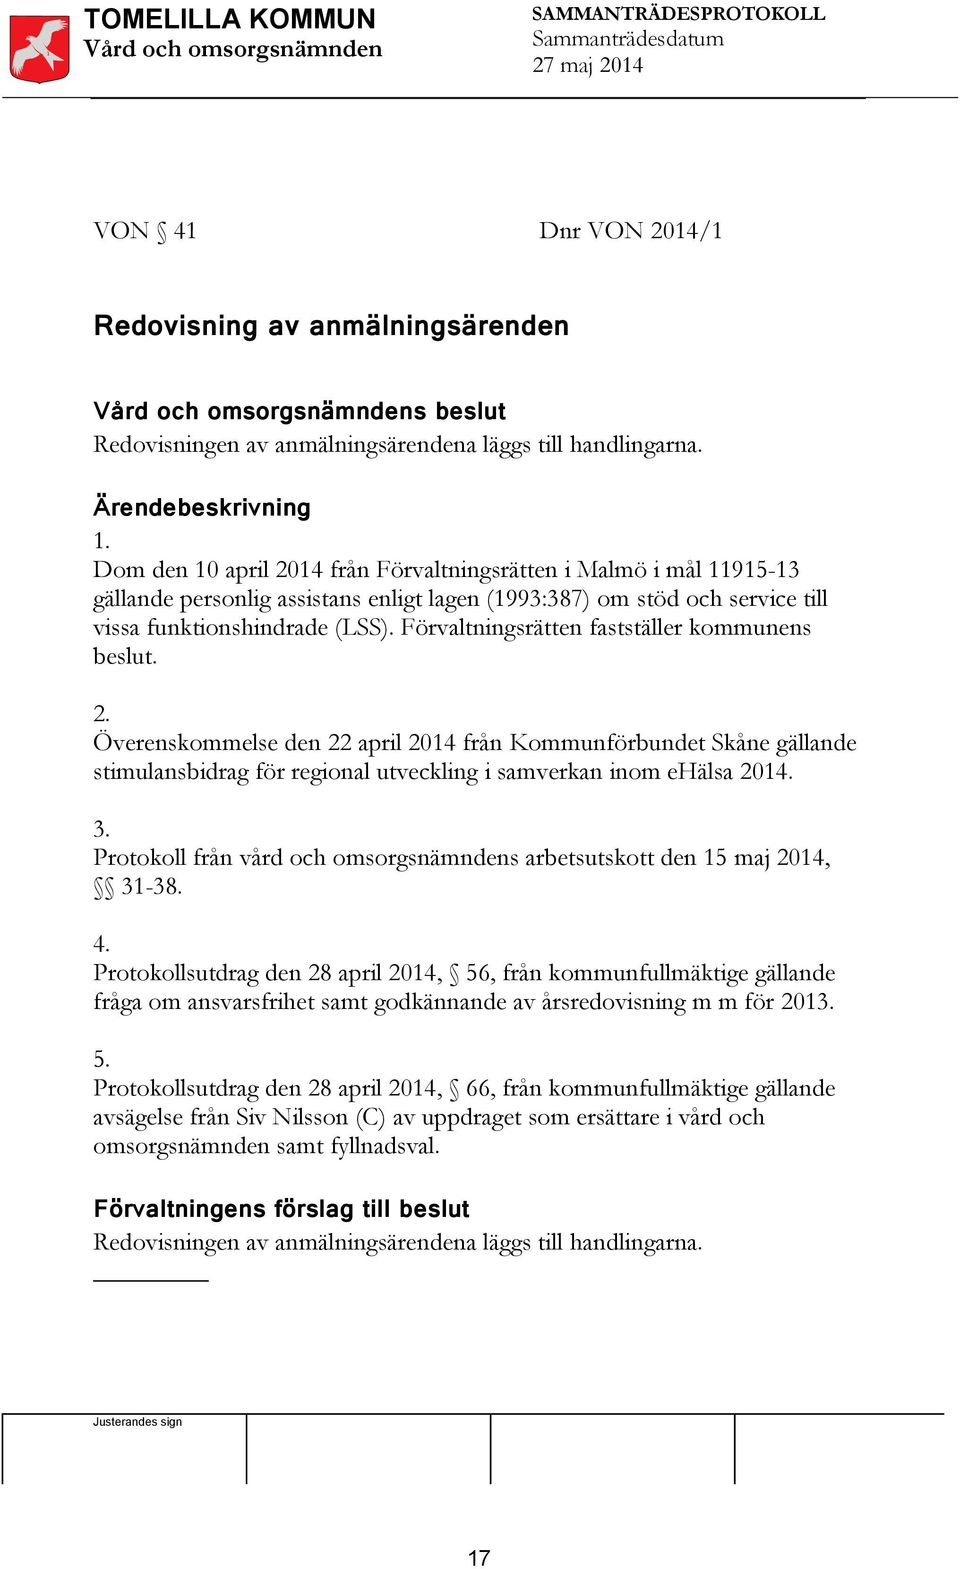 Förvaltningsrätten fastställer kommunens beslut. 2. Överenskommelse den 22 april 2014 från Kommunförbundet Skåne gällande stimulansbidrag för regional utveckling i samverkan inom ehälsa 2014. 3.